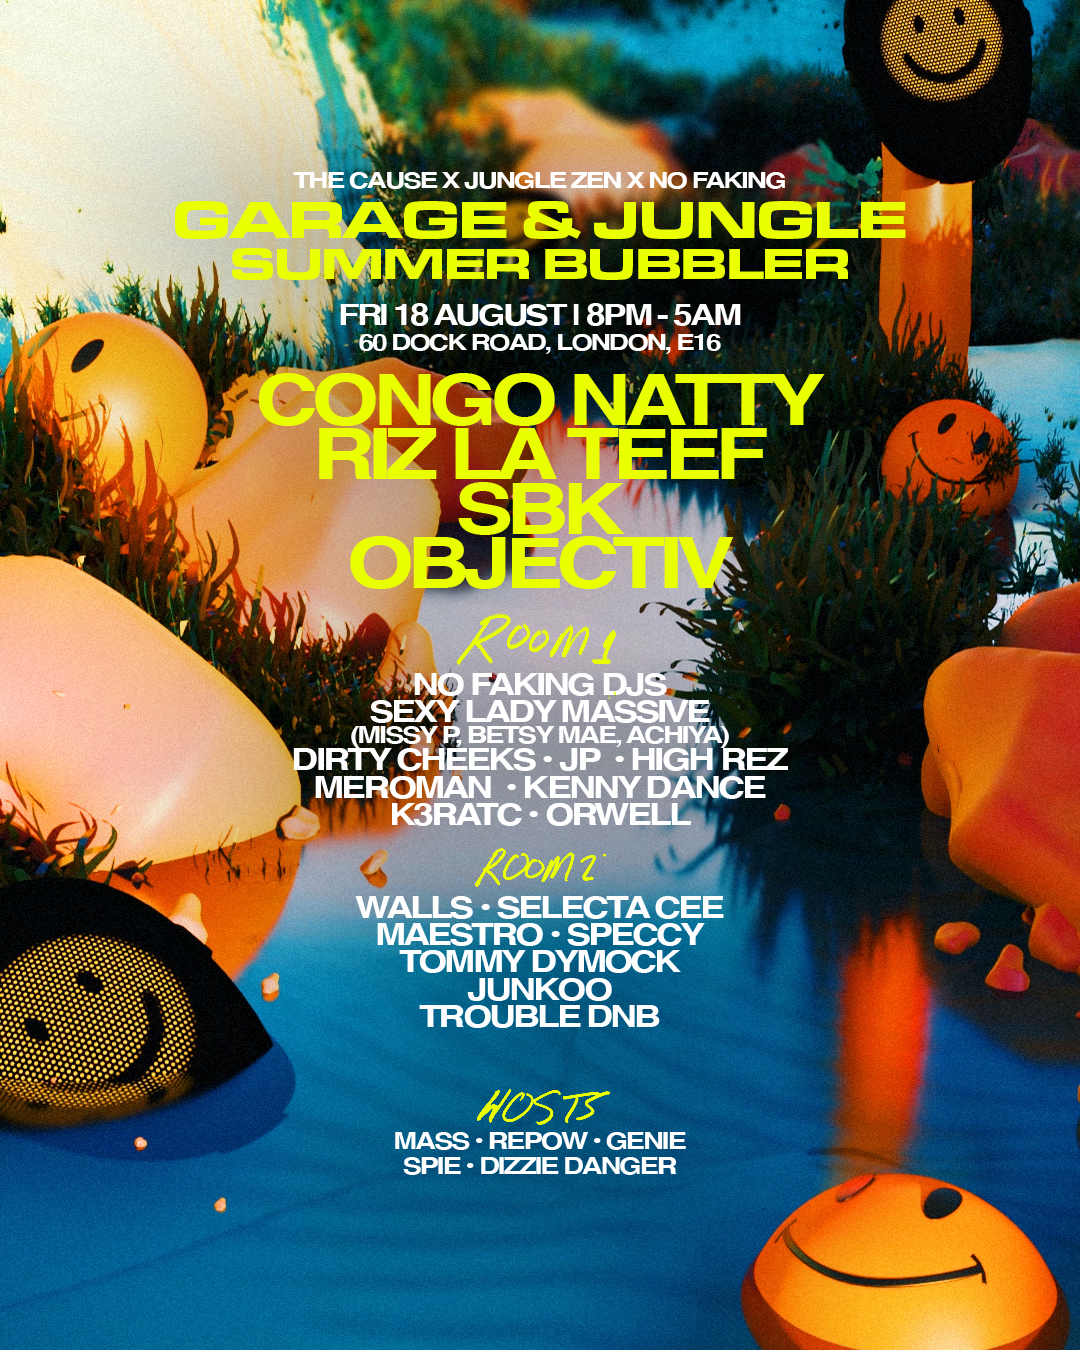 Garage & Jungle Summer Bubbler with Congo Natty, RIZ LA TEEF - Página frontal